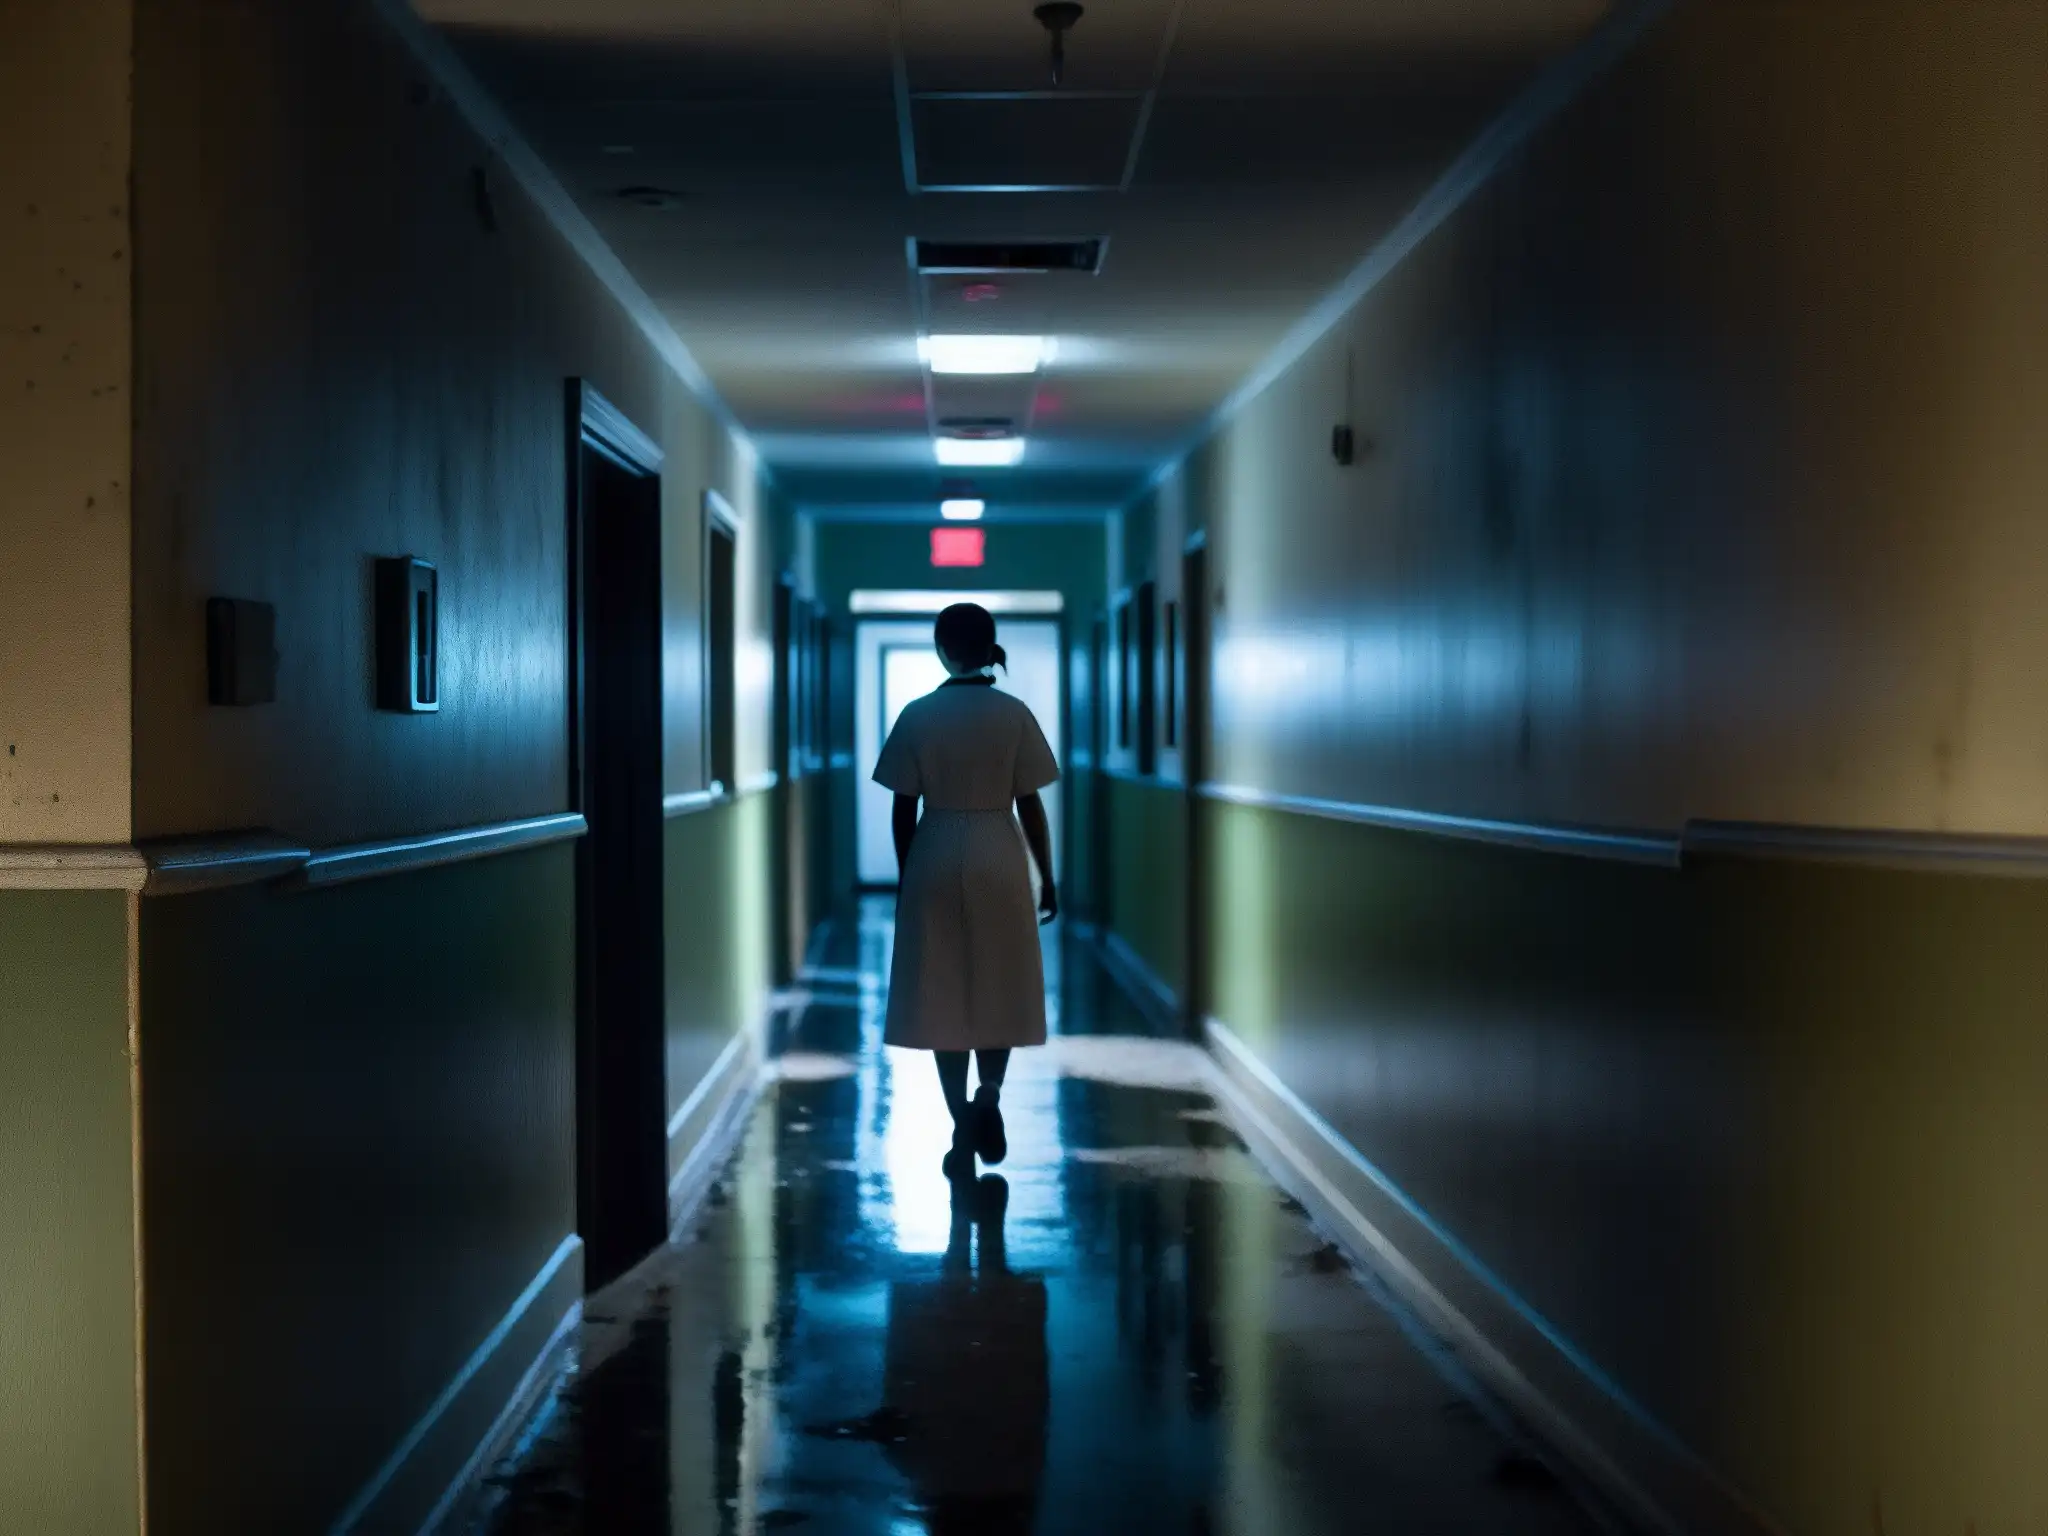 Un pasillo abandonado de hospital de noche con una luz titilante, creando sombras misteriosas